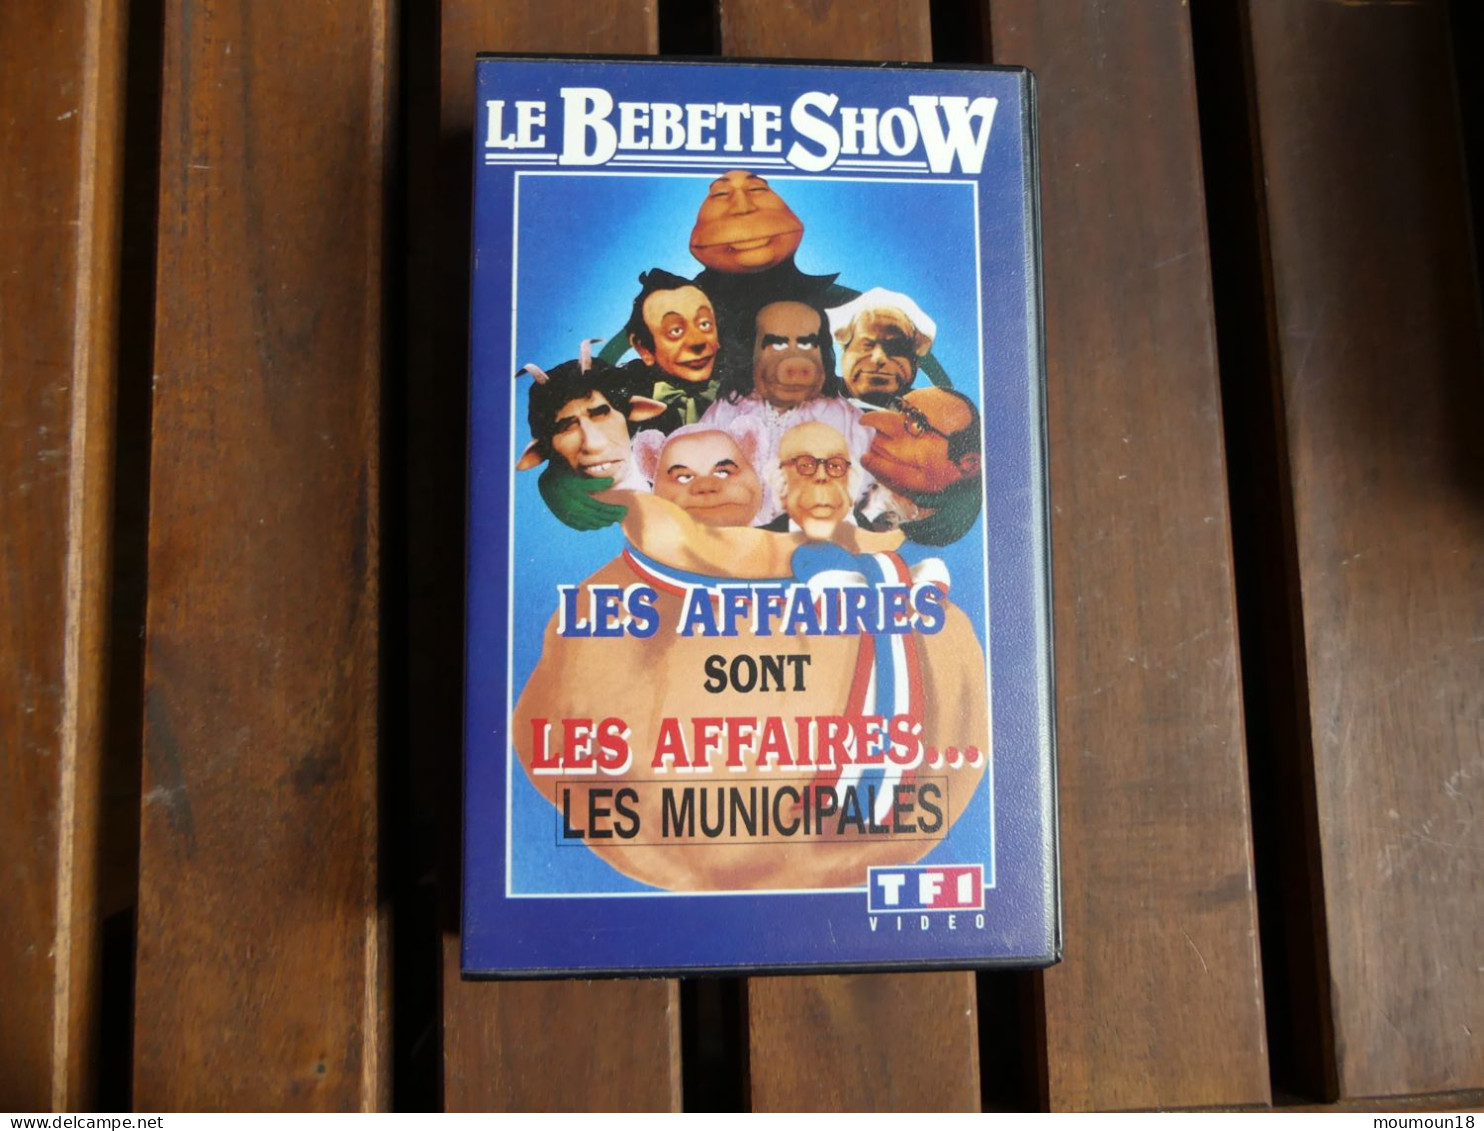 Lot 3 Vidéo-cassettes VHS Secam Le Bebete Show n° 1 à 3 TF1 VIDEO 1988